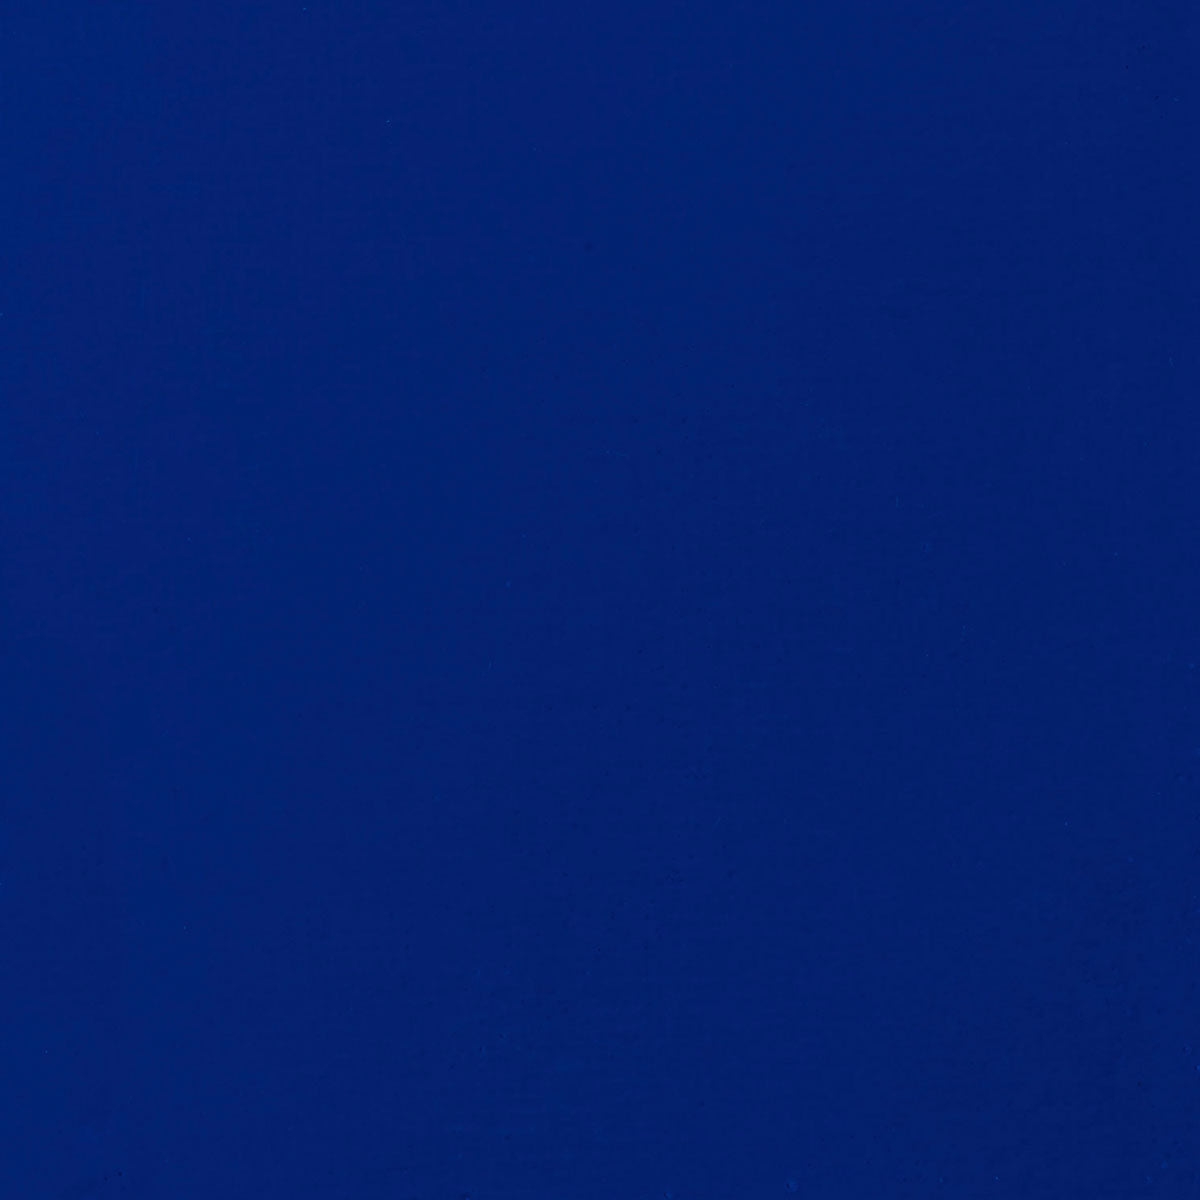 Liquitex-Gouache Acrylique 59ml S1-Bleu Outremer Rouge